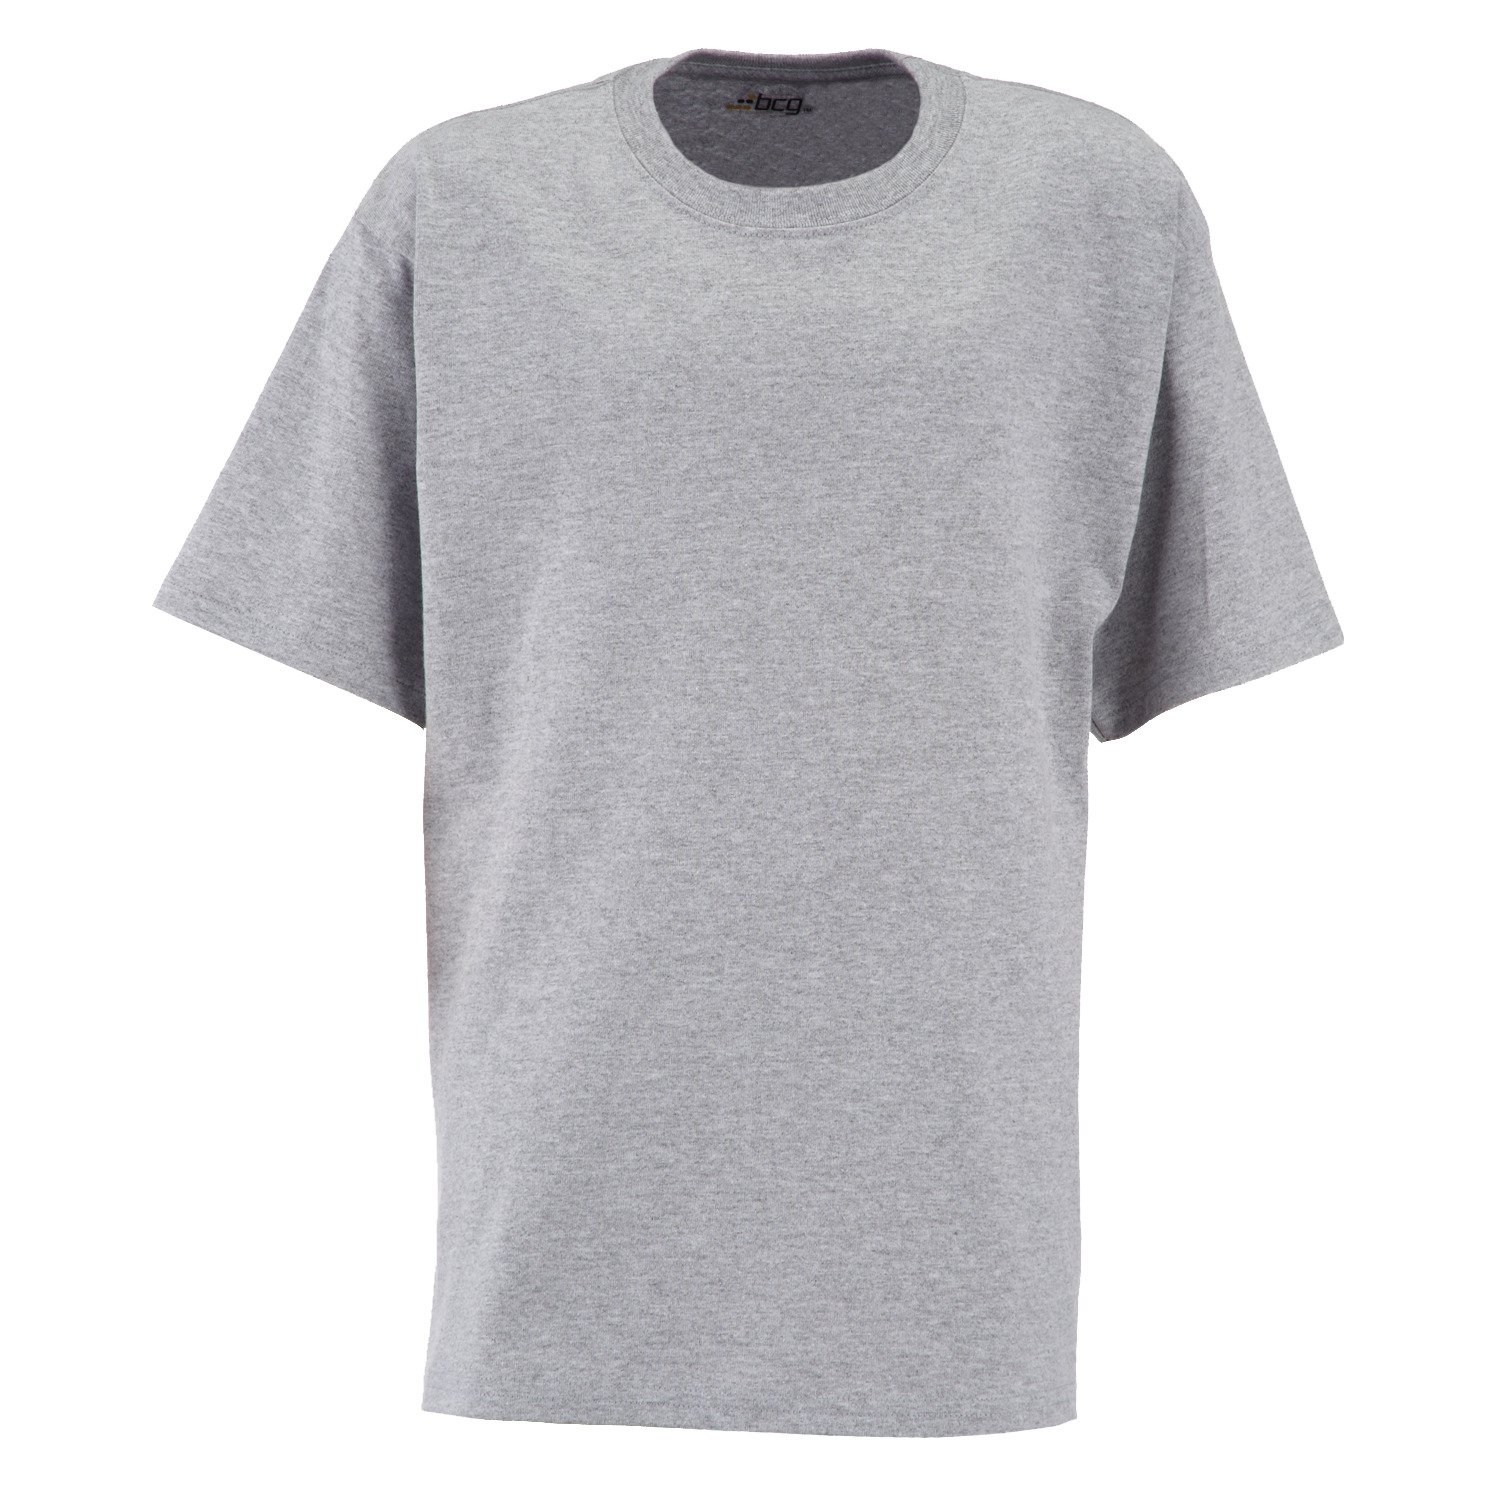 Boys' Shirts And T-Shirts | T-Shirts For Boys, Shirts For Boys | Academy